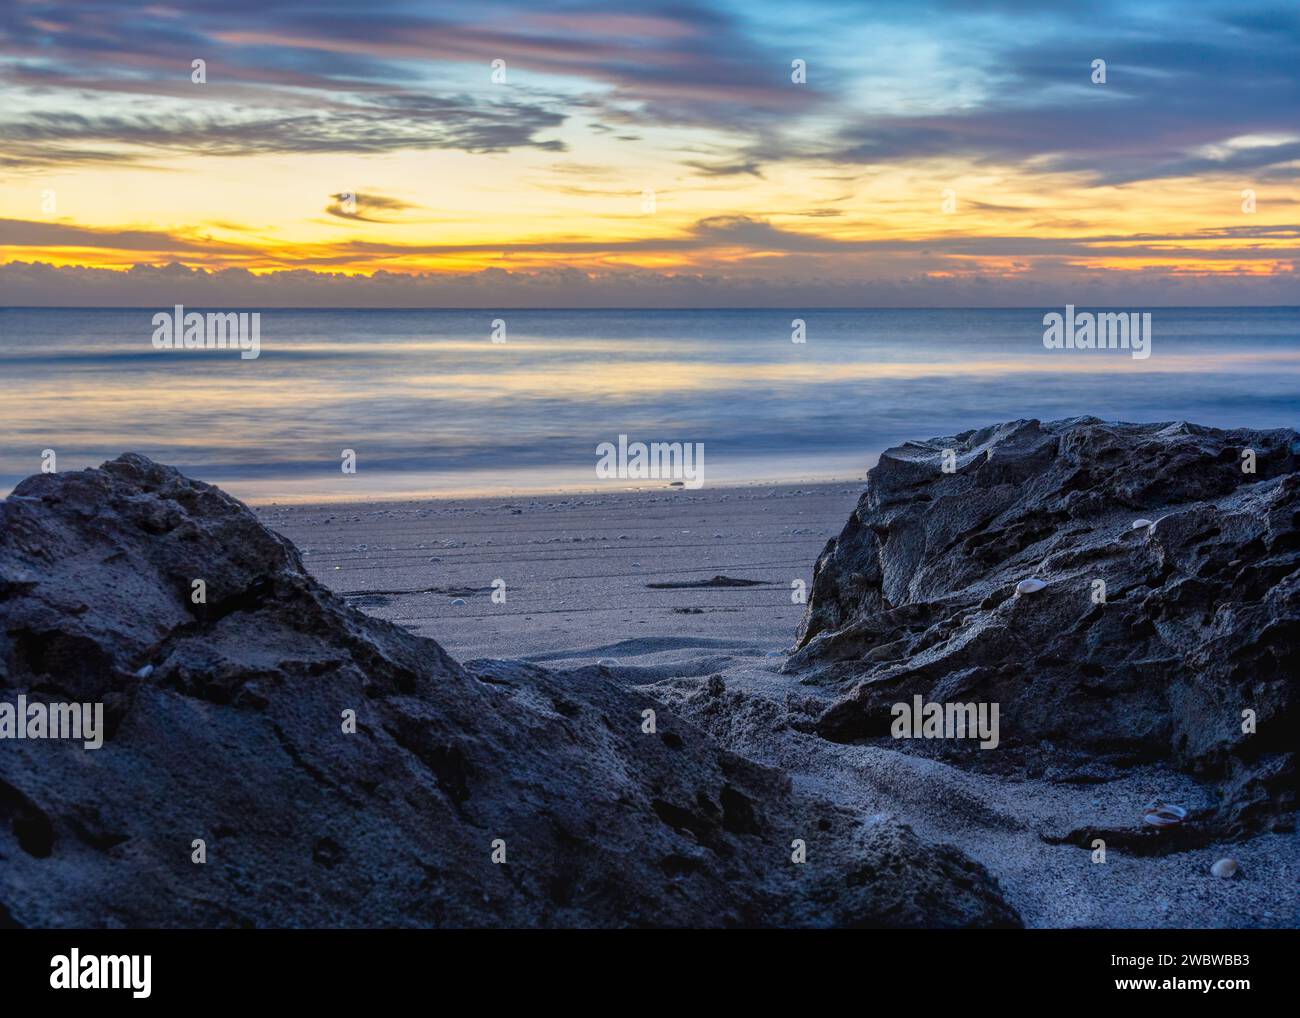 Ruhiger Sonnenaufgang am Strand, perfekt für Reisebroschüren, Meditationshintergründe und Web-Design mit Naturmotiven. Stockfoto